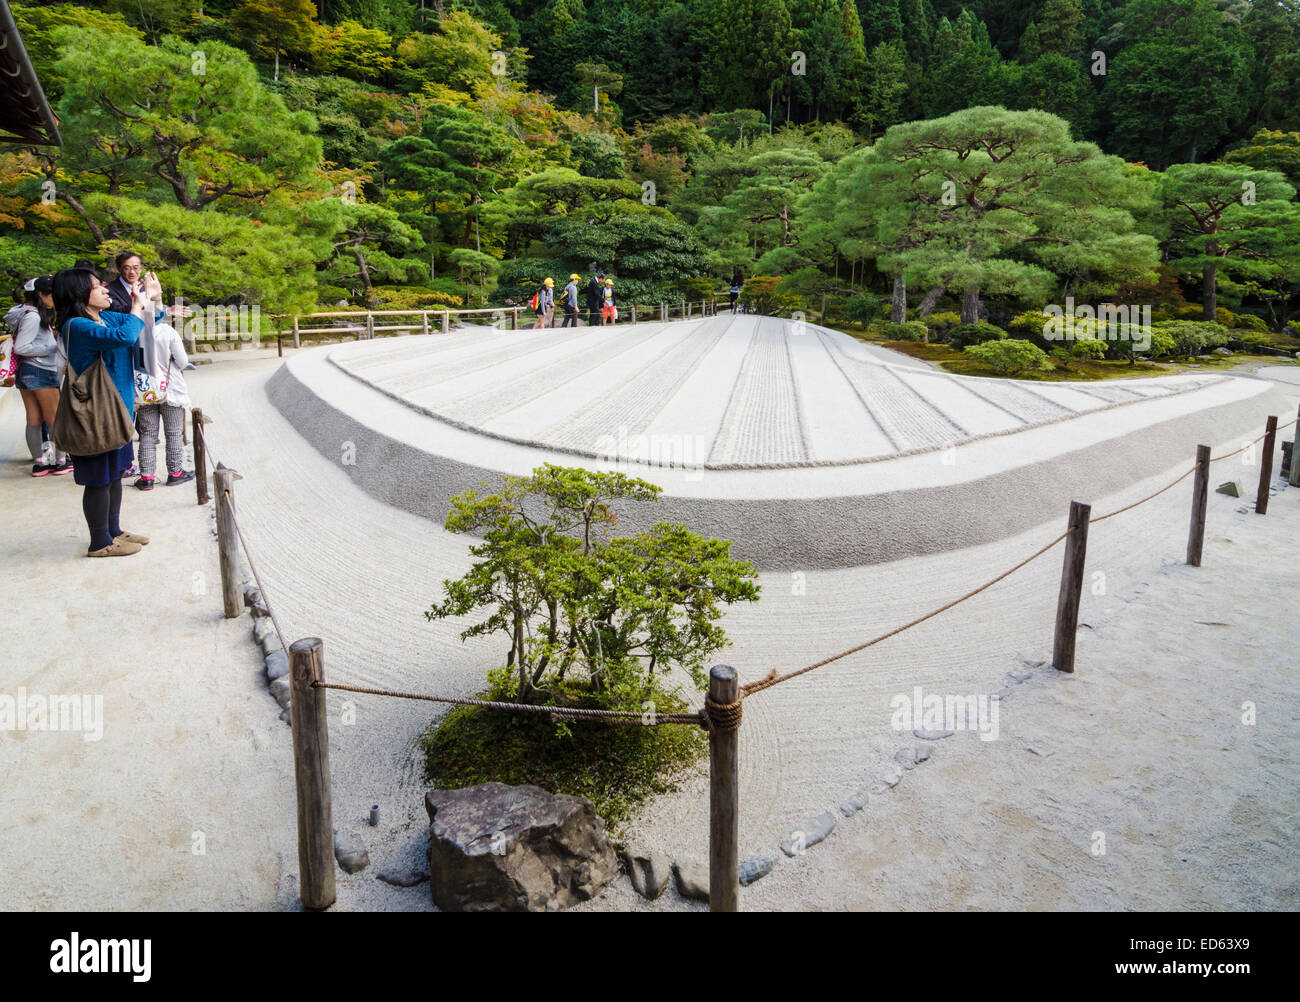 Le jardin de sable de Ginkaku-ji, également connu comme le Temple du pavillon d'argent, Kyoto, Japon, Kansai Banque D'Images